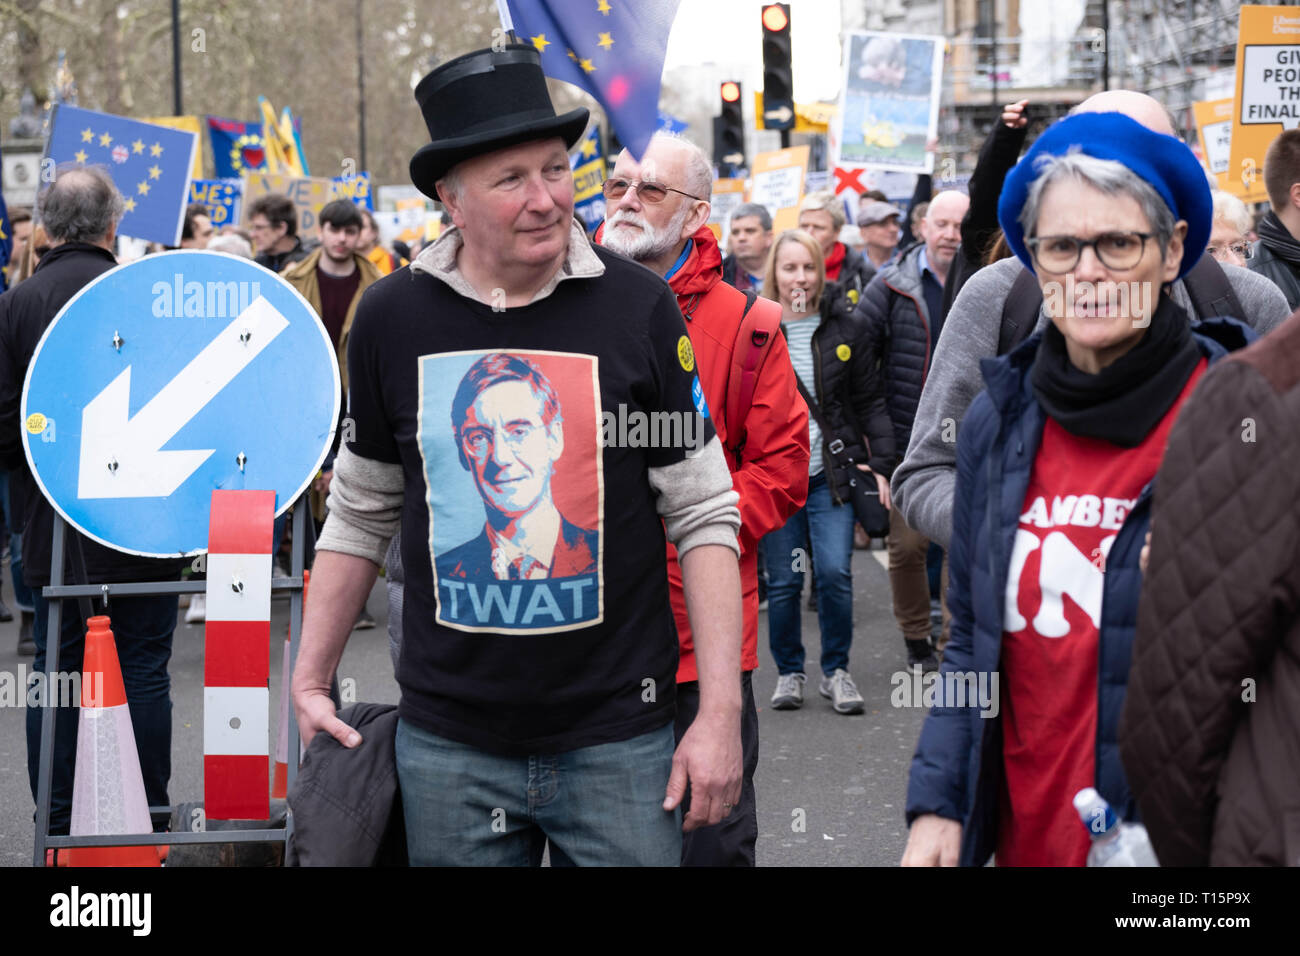 Londres, Royaume-Uni. Mar 23, 2019. Jqcob Rees Mogg manifestants portant des T-shirt à voter pour arrêter Mars Brexit, Londres 23 Mars 2019 Crédit : Chris Moos/Alamy Live News Banque D'Images